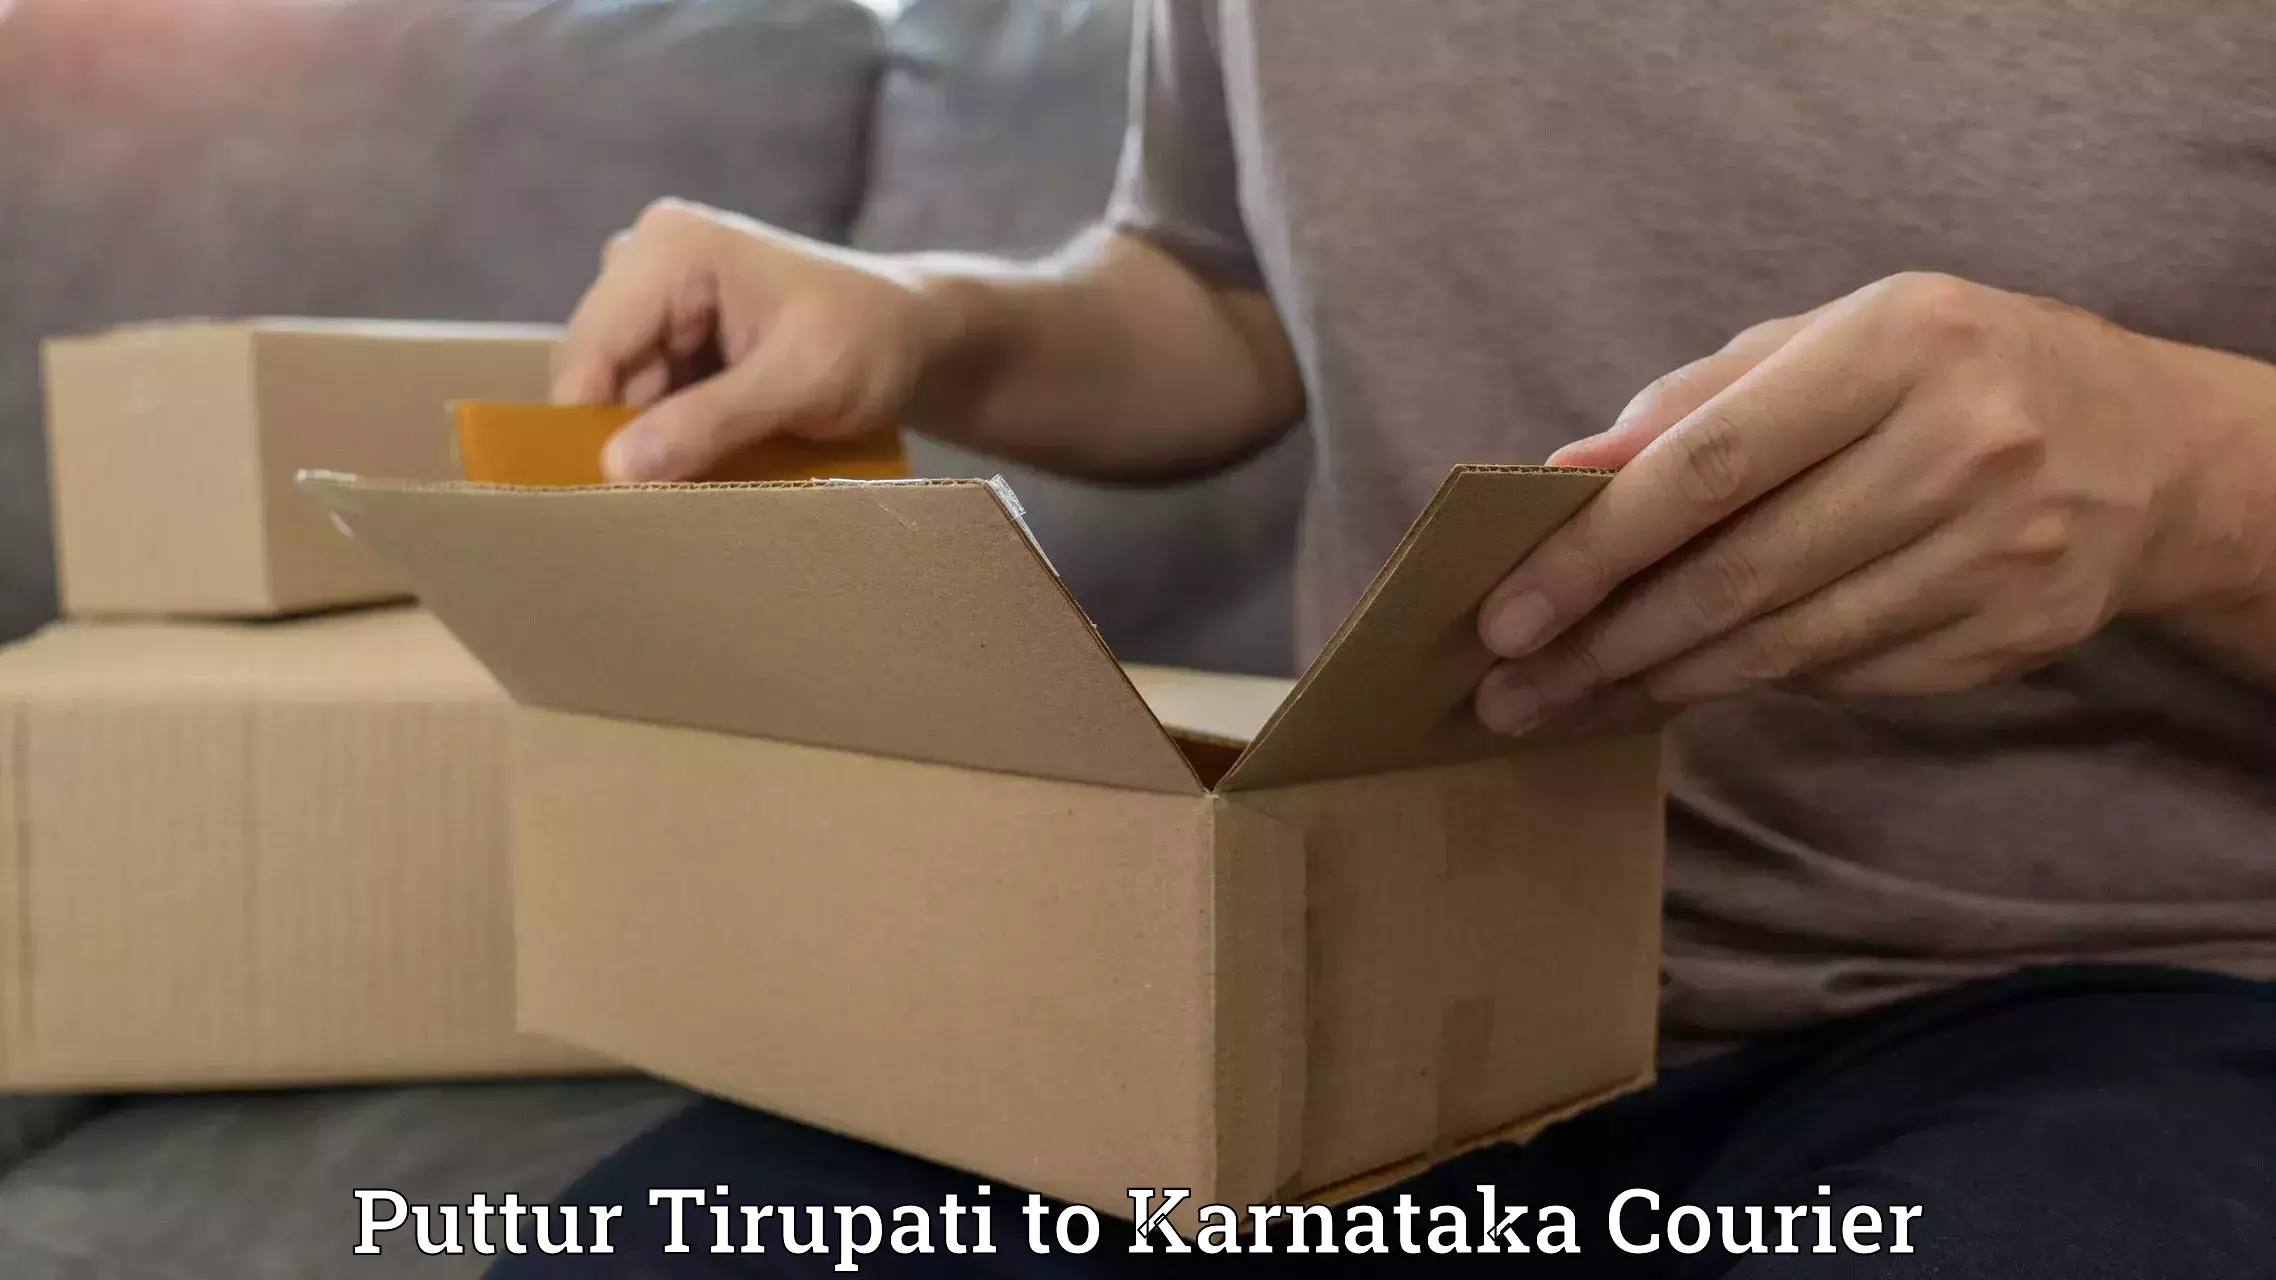 User-friendly delivery service Puttur Tirupati to Anavatti